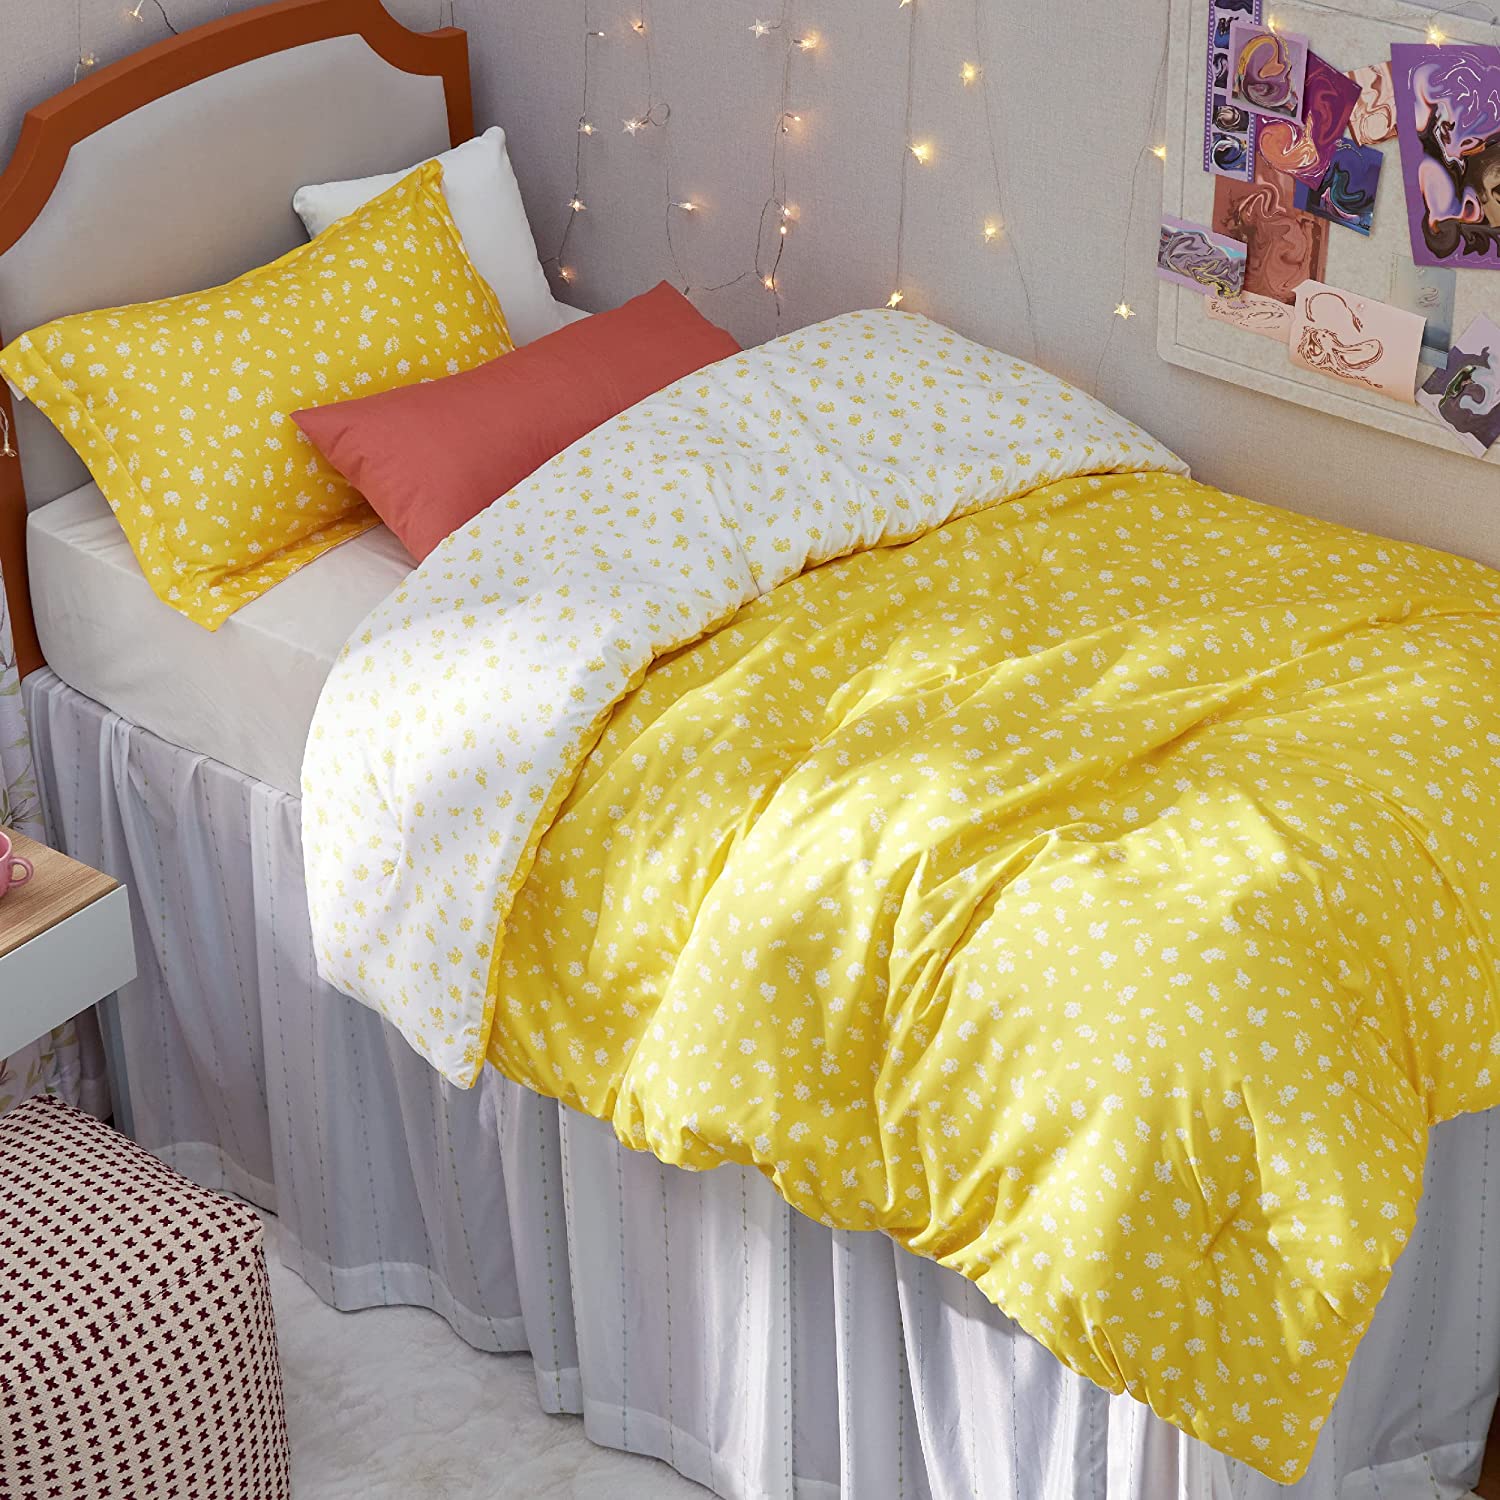 Bedsure Twin Bed Comforter Set - Sage Green Comforter Set Reversible Floral  Bedd